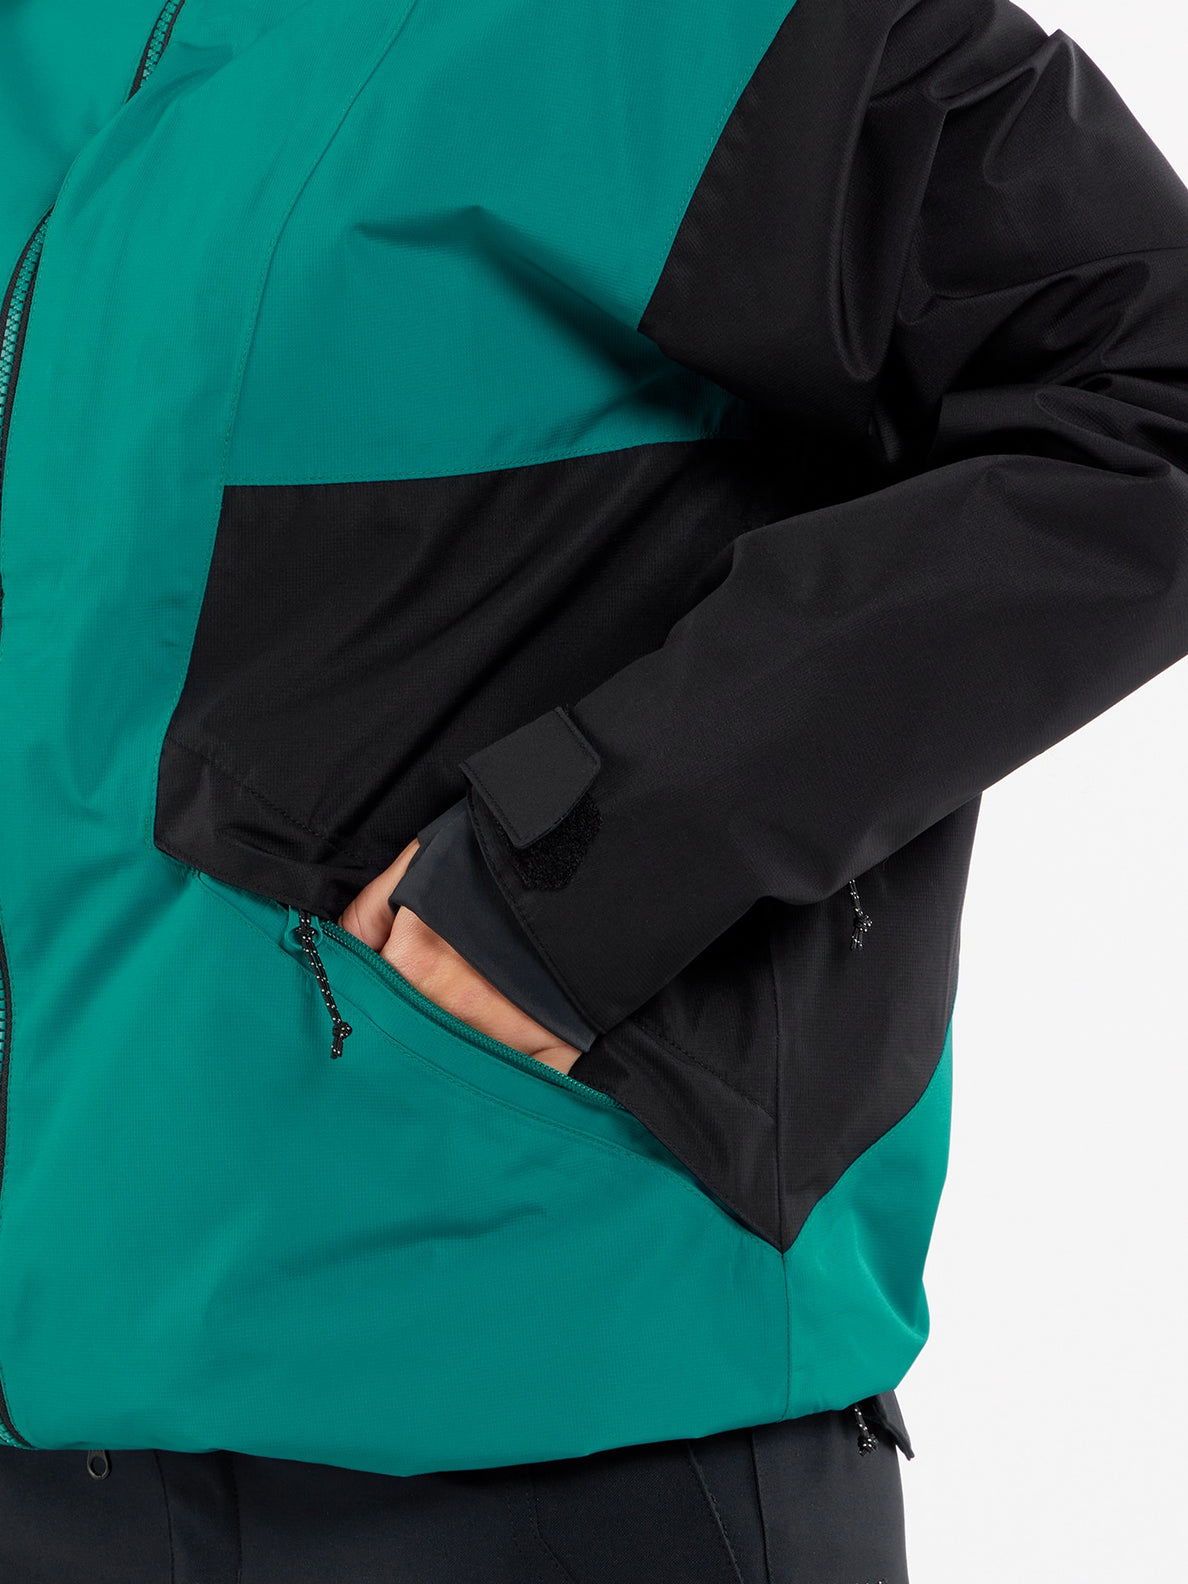 Womens Kimball Jacket - Vibrant Green (H0652404_VBG) [33]